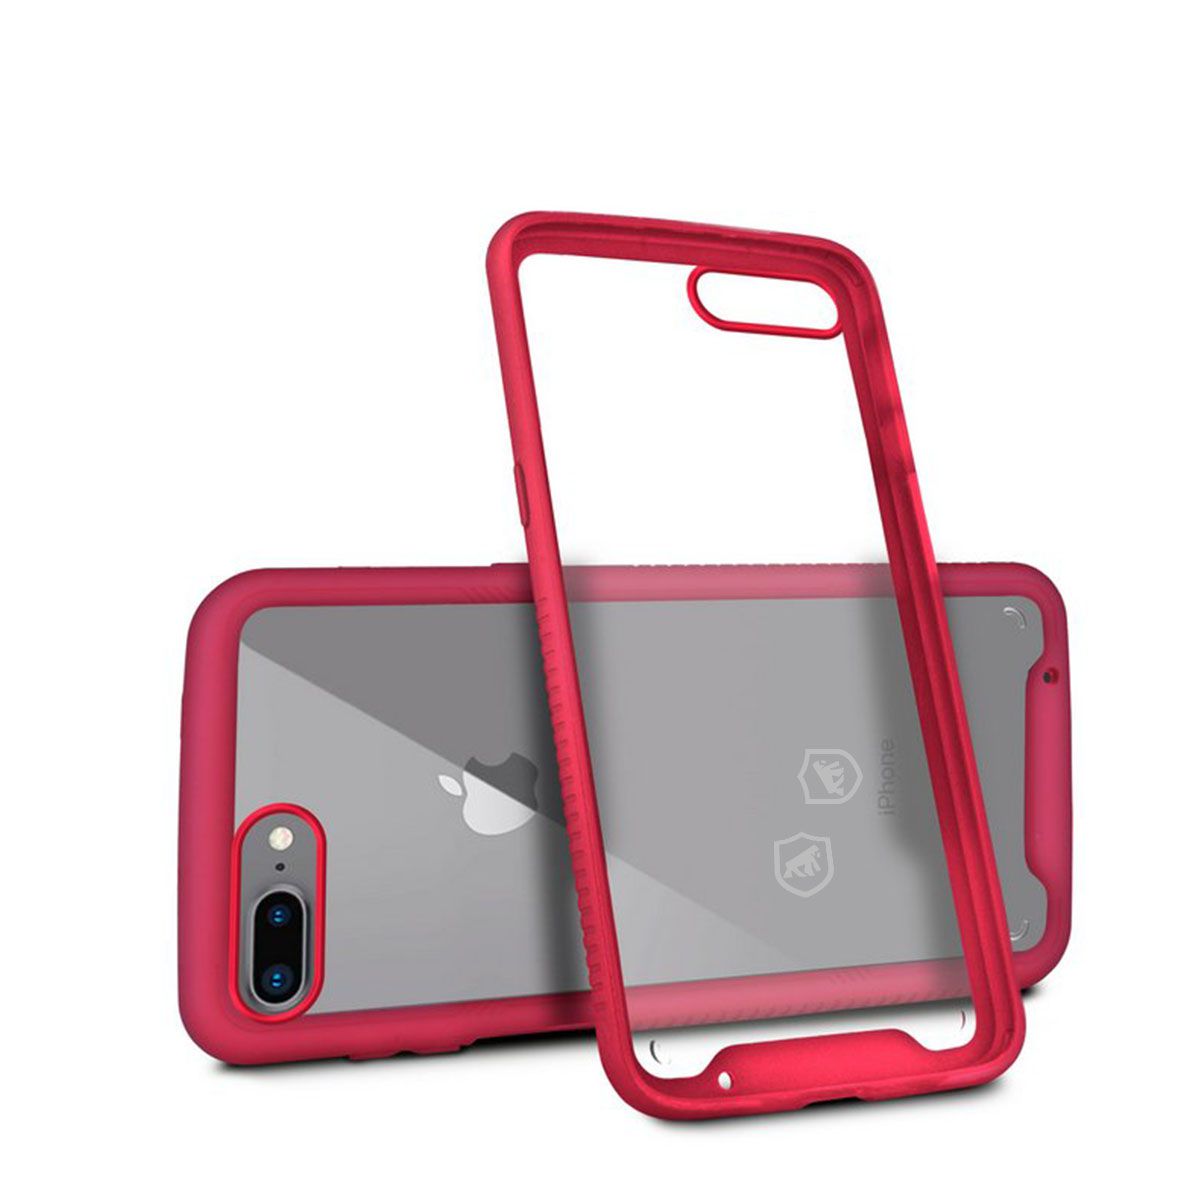 Capa para iPhone 7 Plus / 8 Plus - Stronger Rosa - Gshield - Gshield -  Capas para celular, Películas, Cabos e muito mais